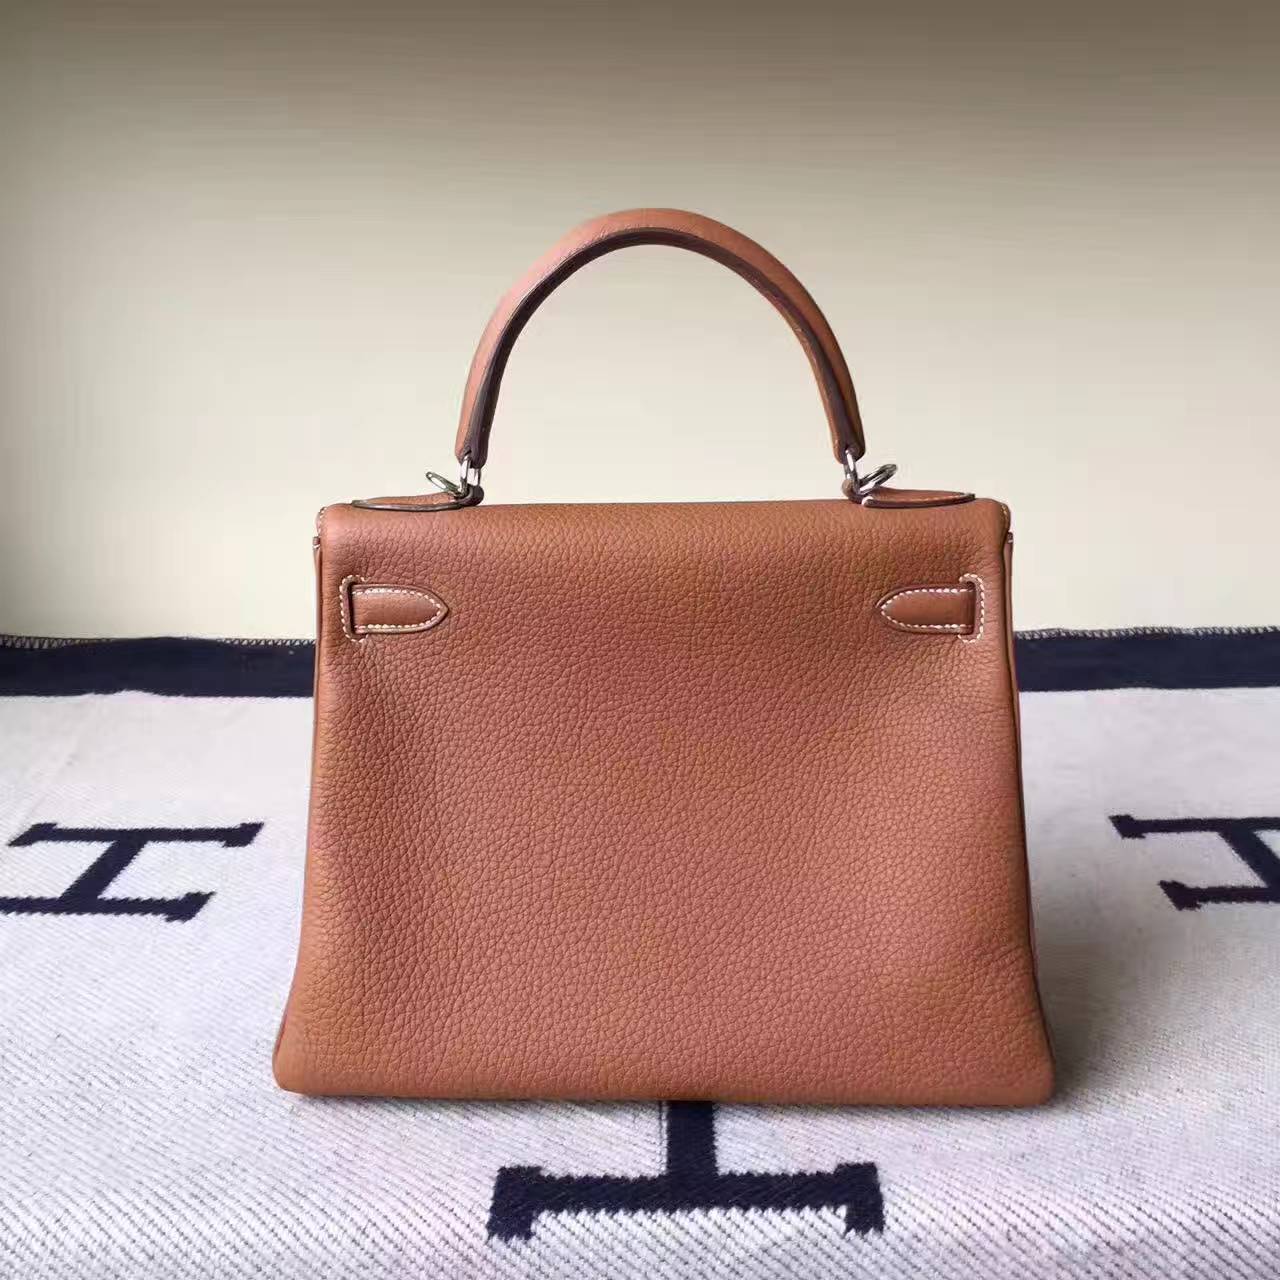 Discount Hermes Kelly 28cm Handbag in CK37 Gold Togo Leather